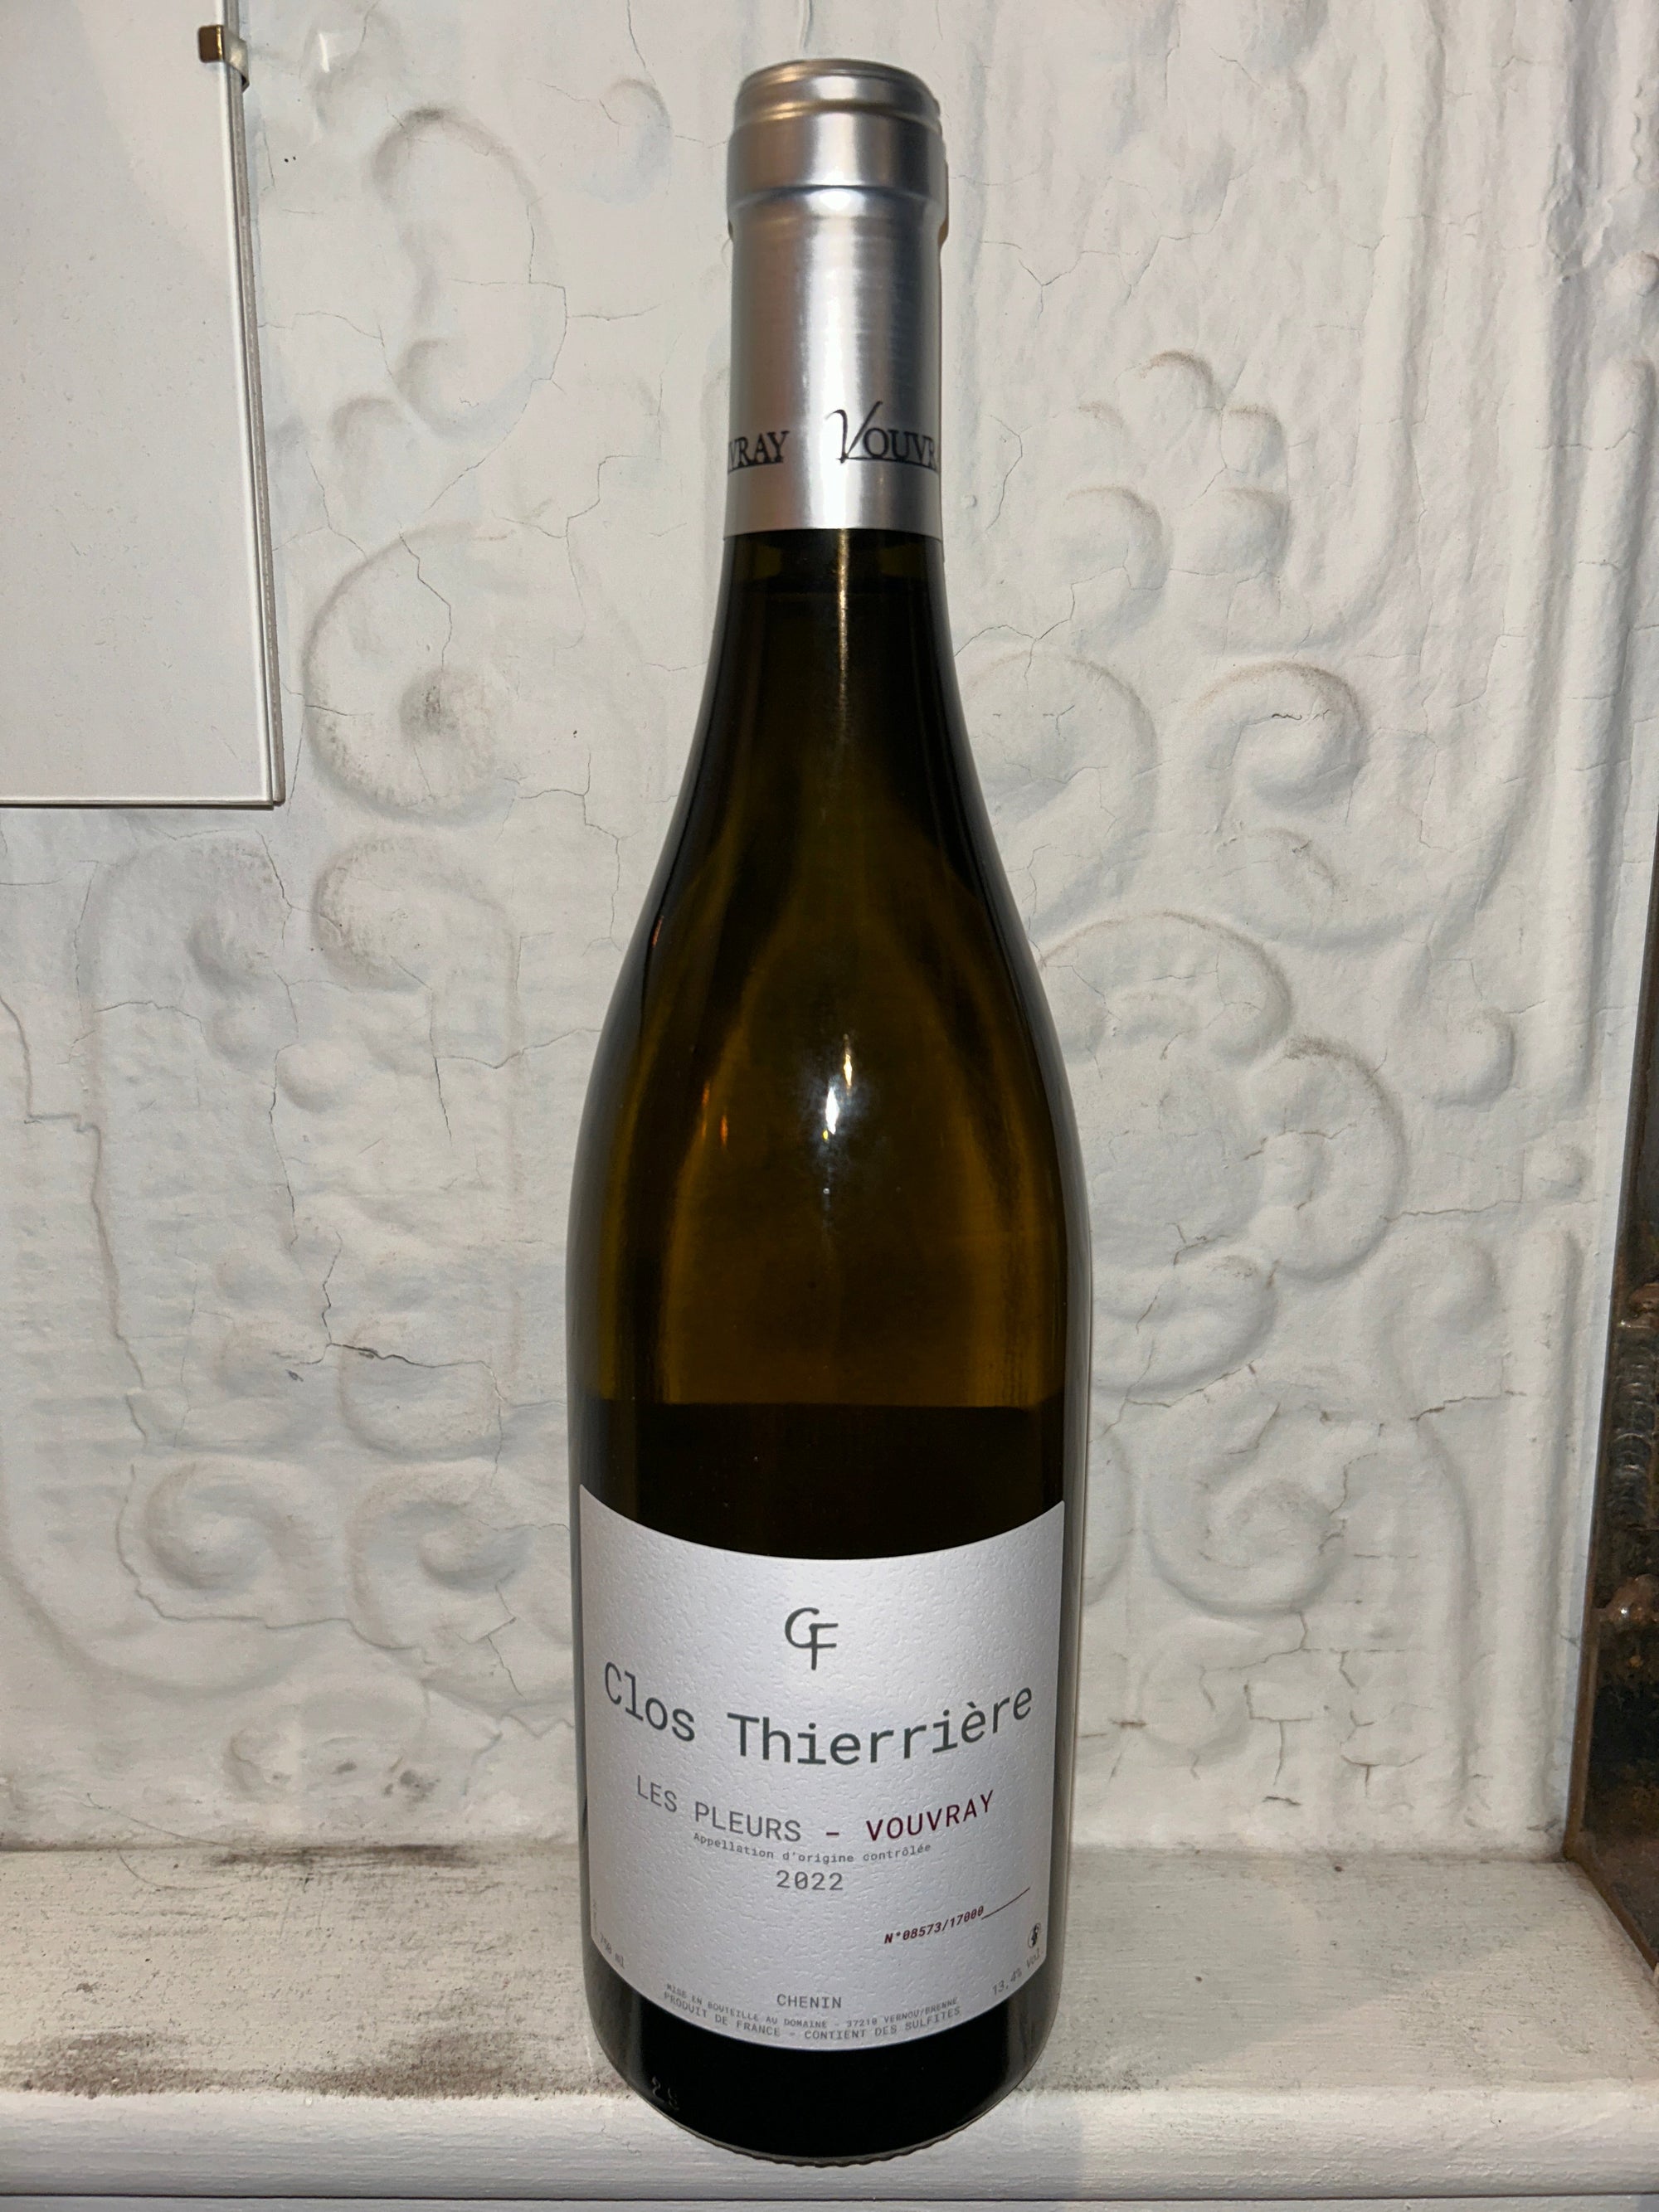 Les Pleurs Vouvray, Clos Thierriere 2022 (Loire Valley, France)-Wine-Bibber & Bell